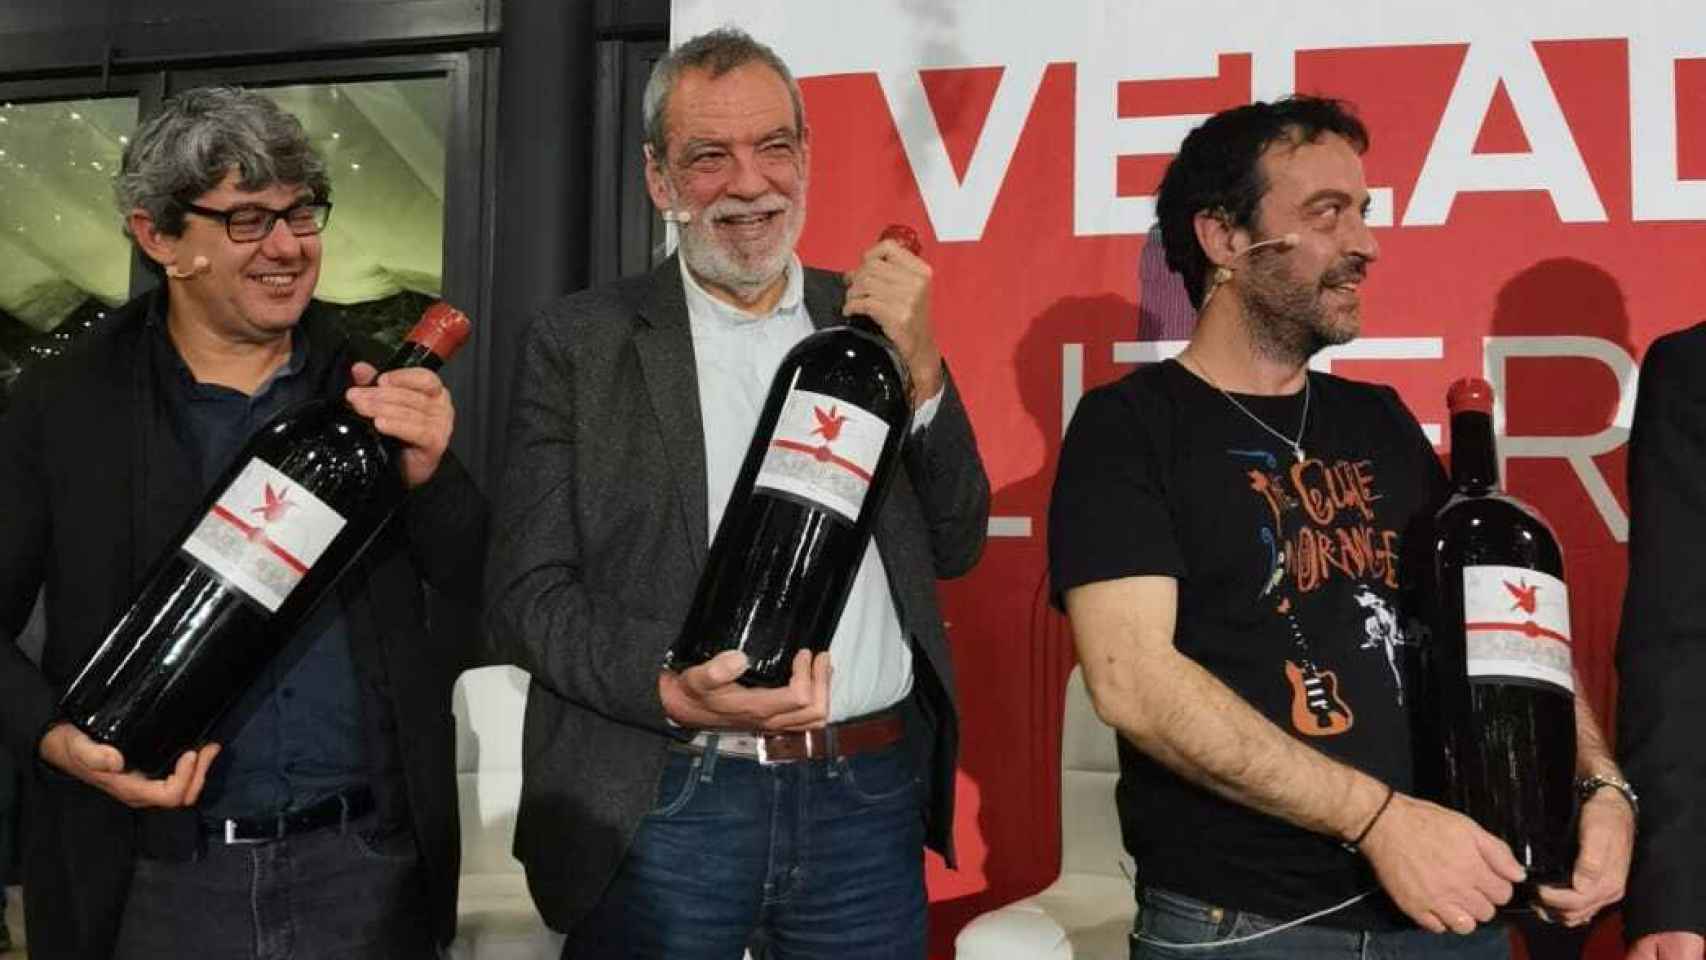 Mercero, Díaz y Martínez reciben las botellas dedicadas a su creación de 'La Bestia'.